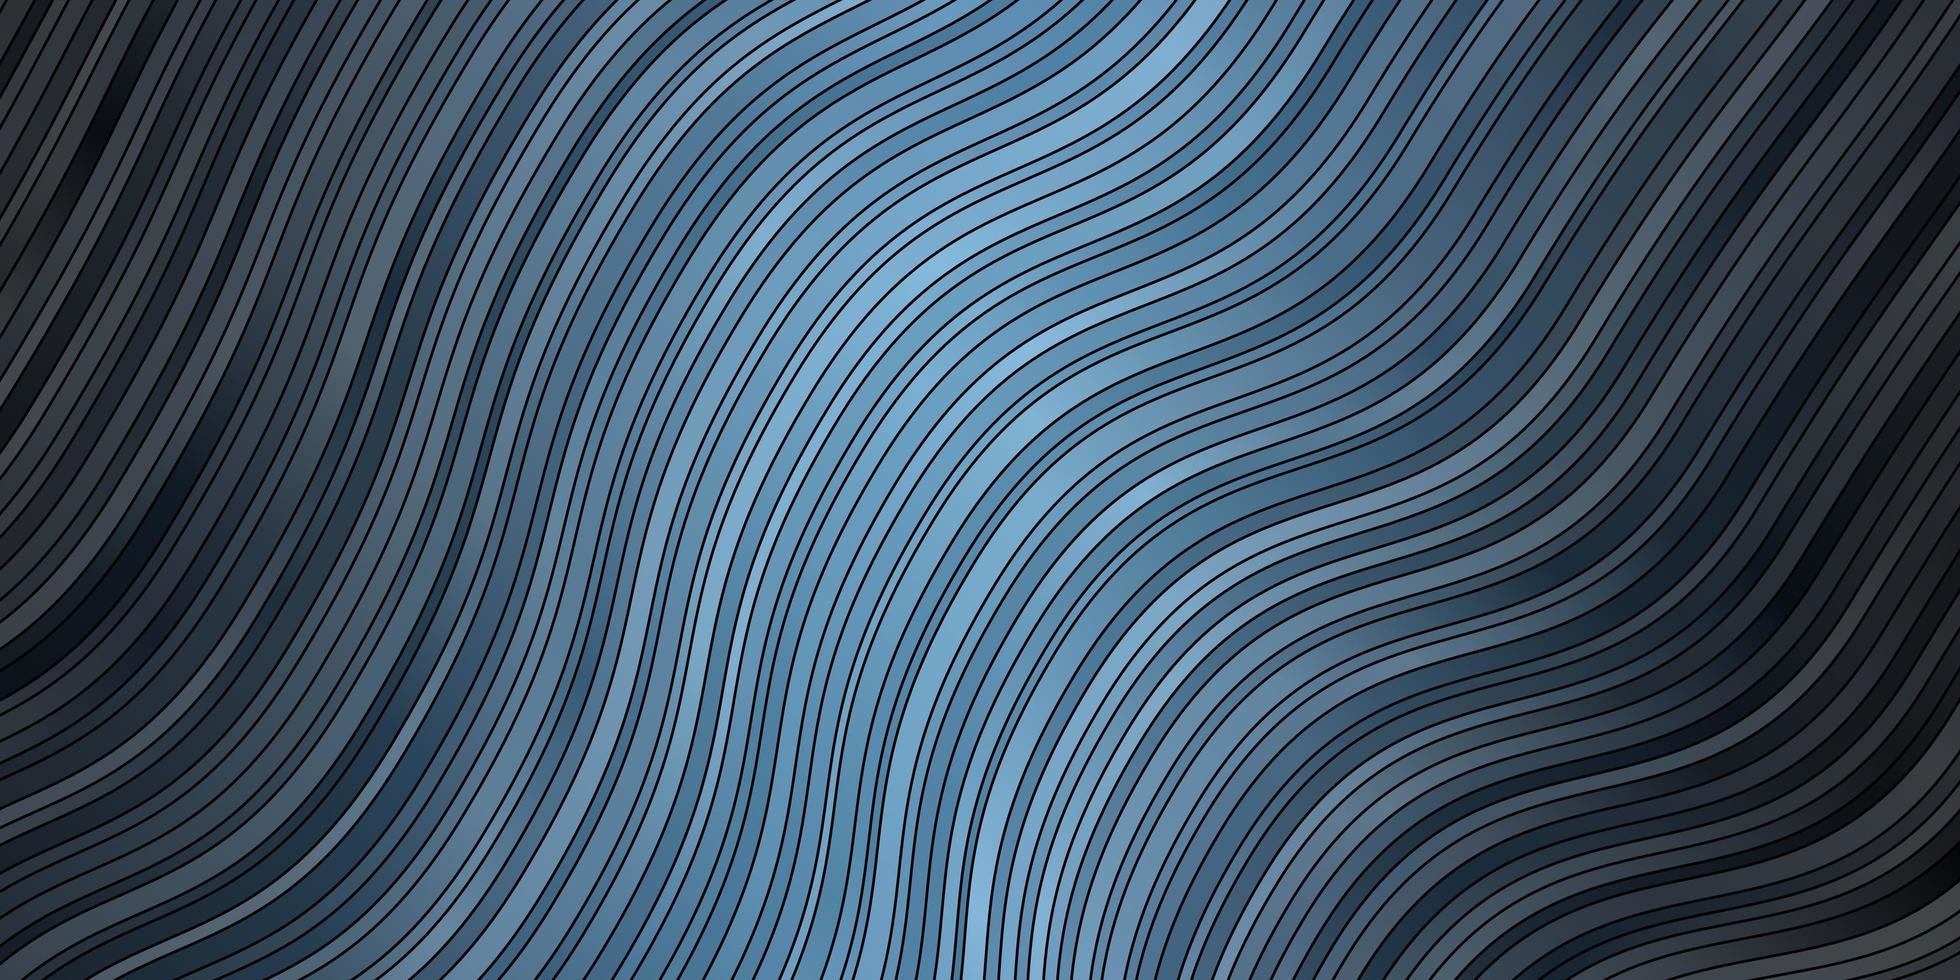 mörkblå vektorbakgrund med böjda linjer abstrakt illustration med bandy lutning linjer mönster för affärshäften broschyrer vektor